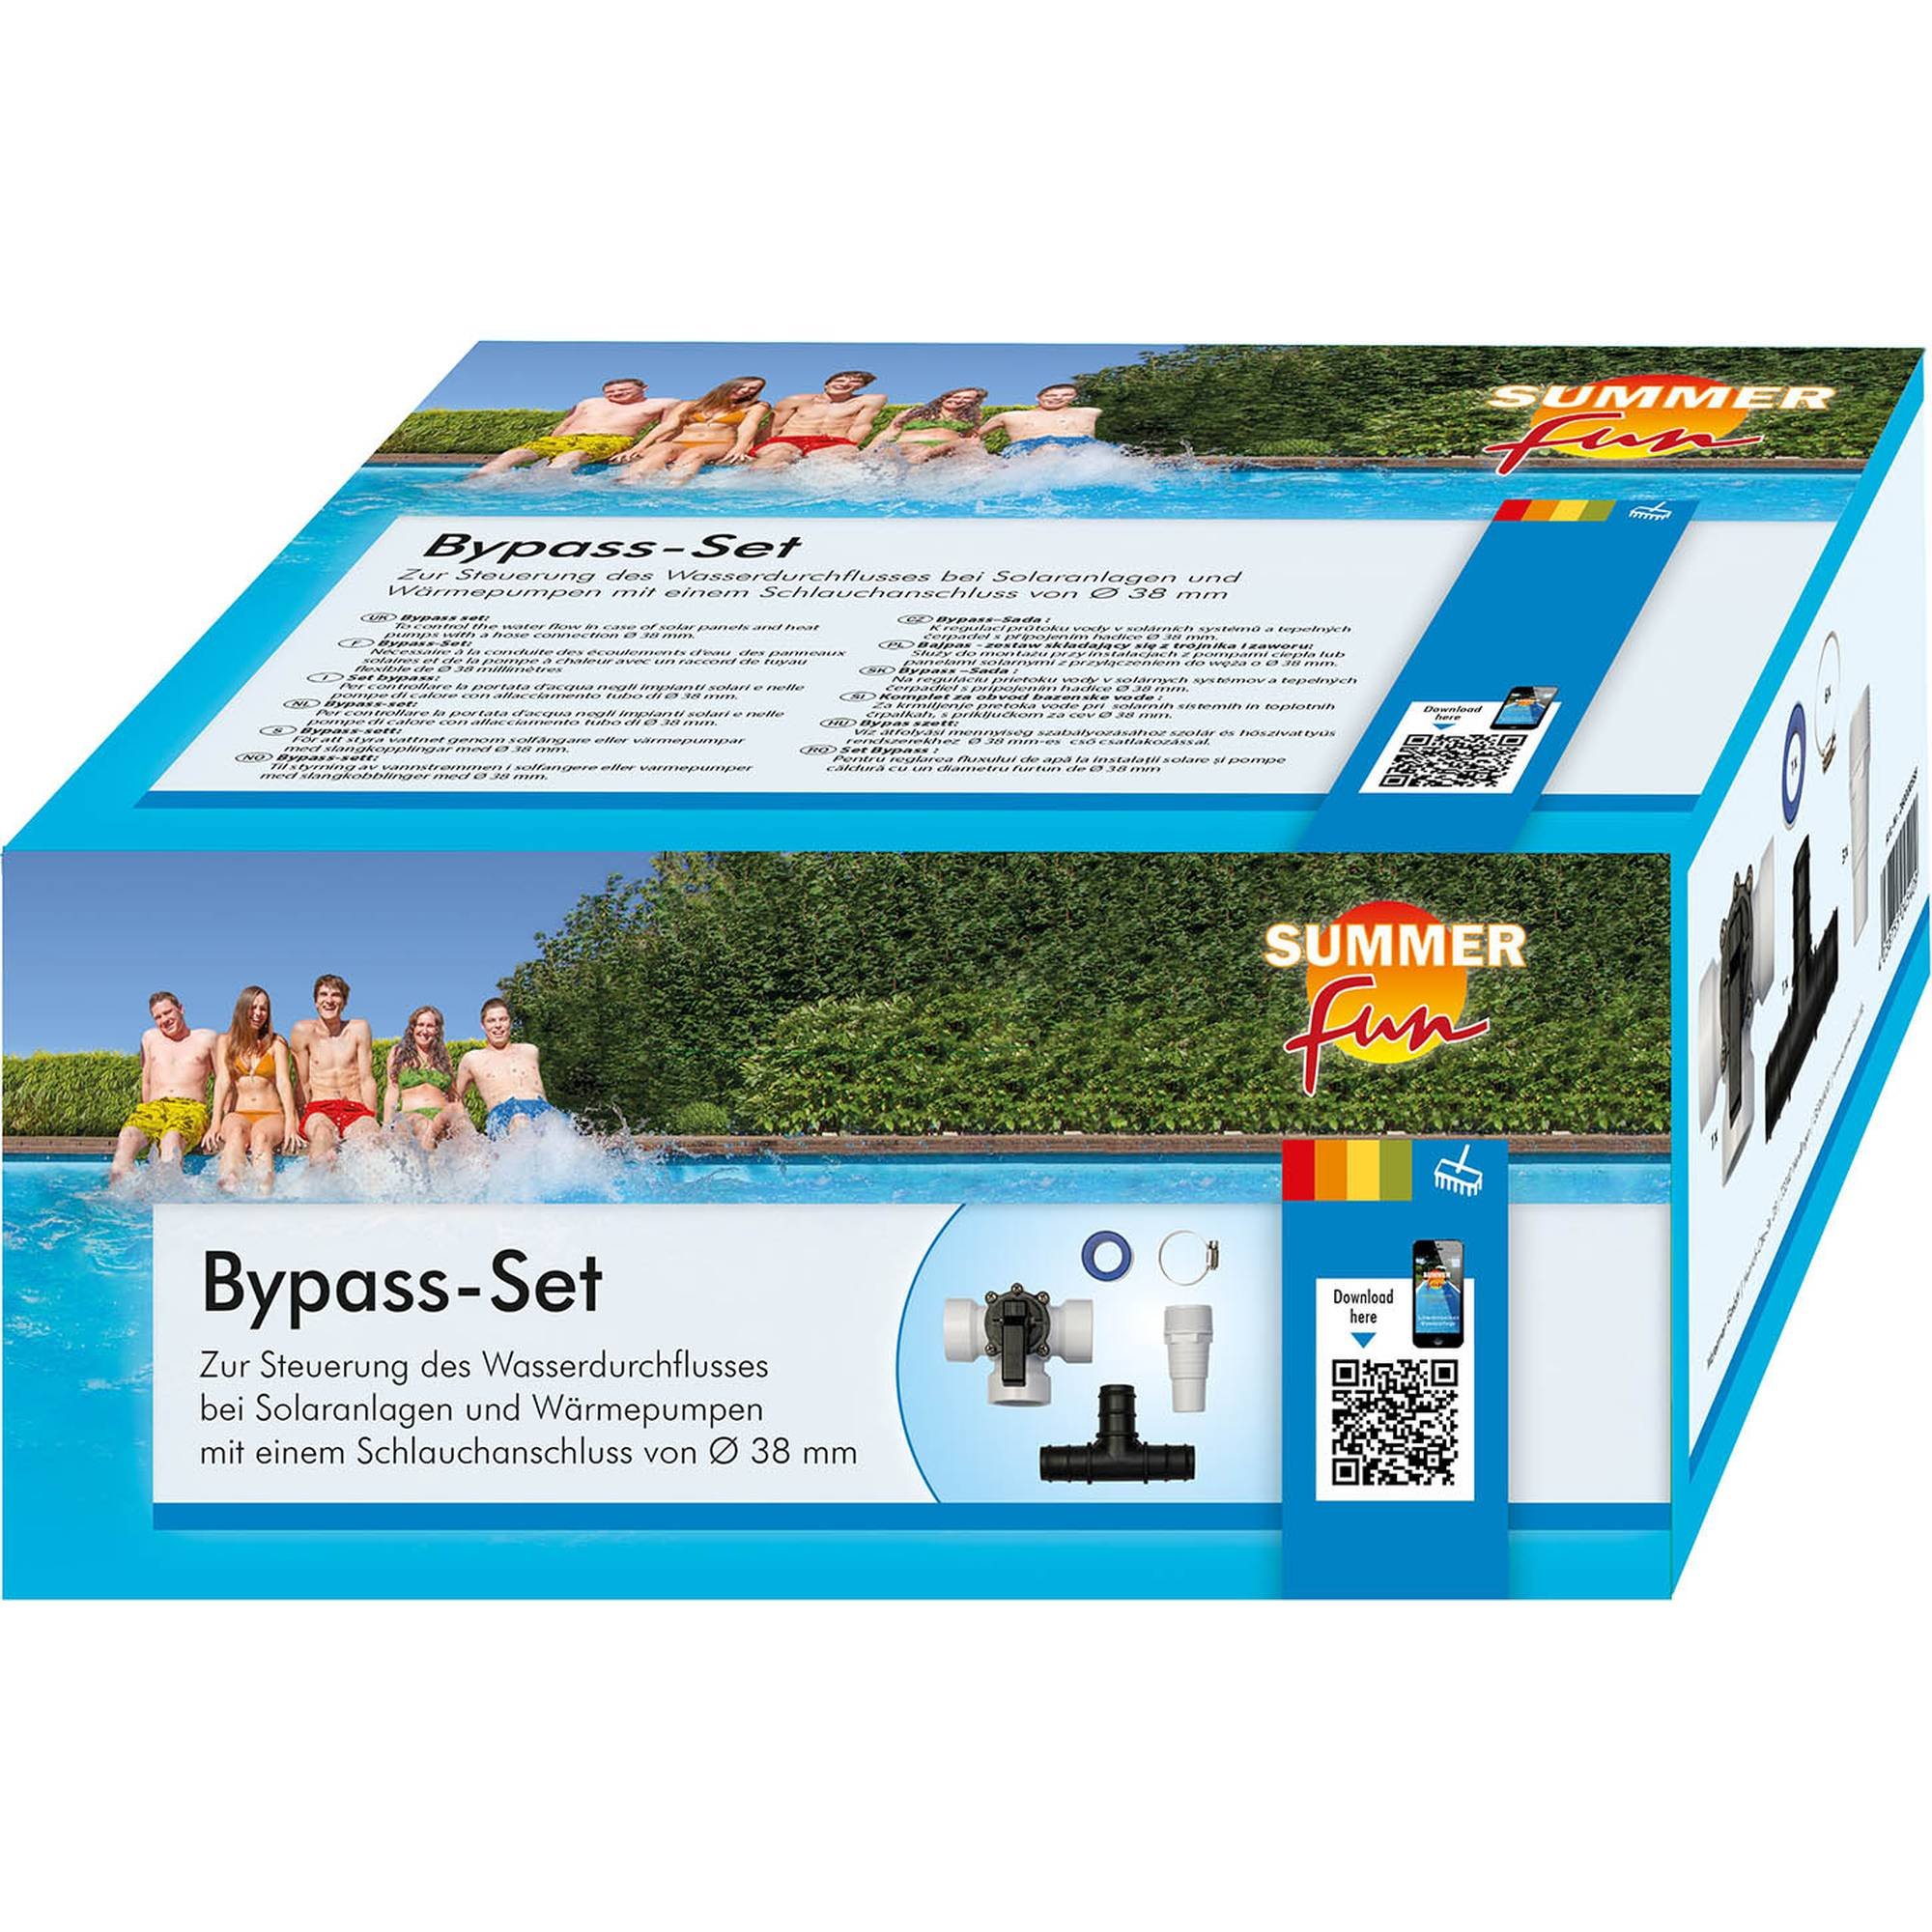 Bypass-Set für Solarmatten oder Wärmepumpen